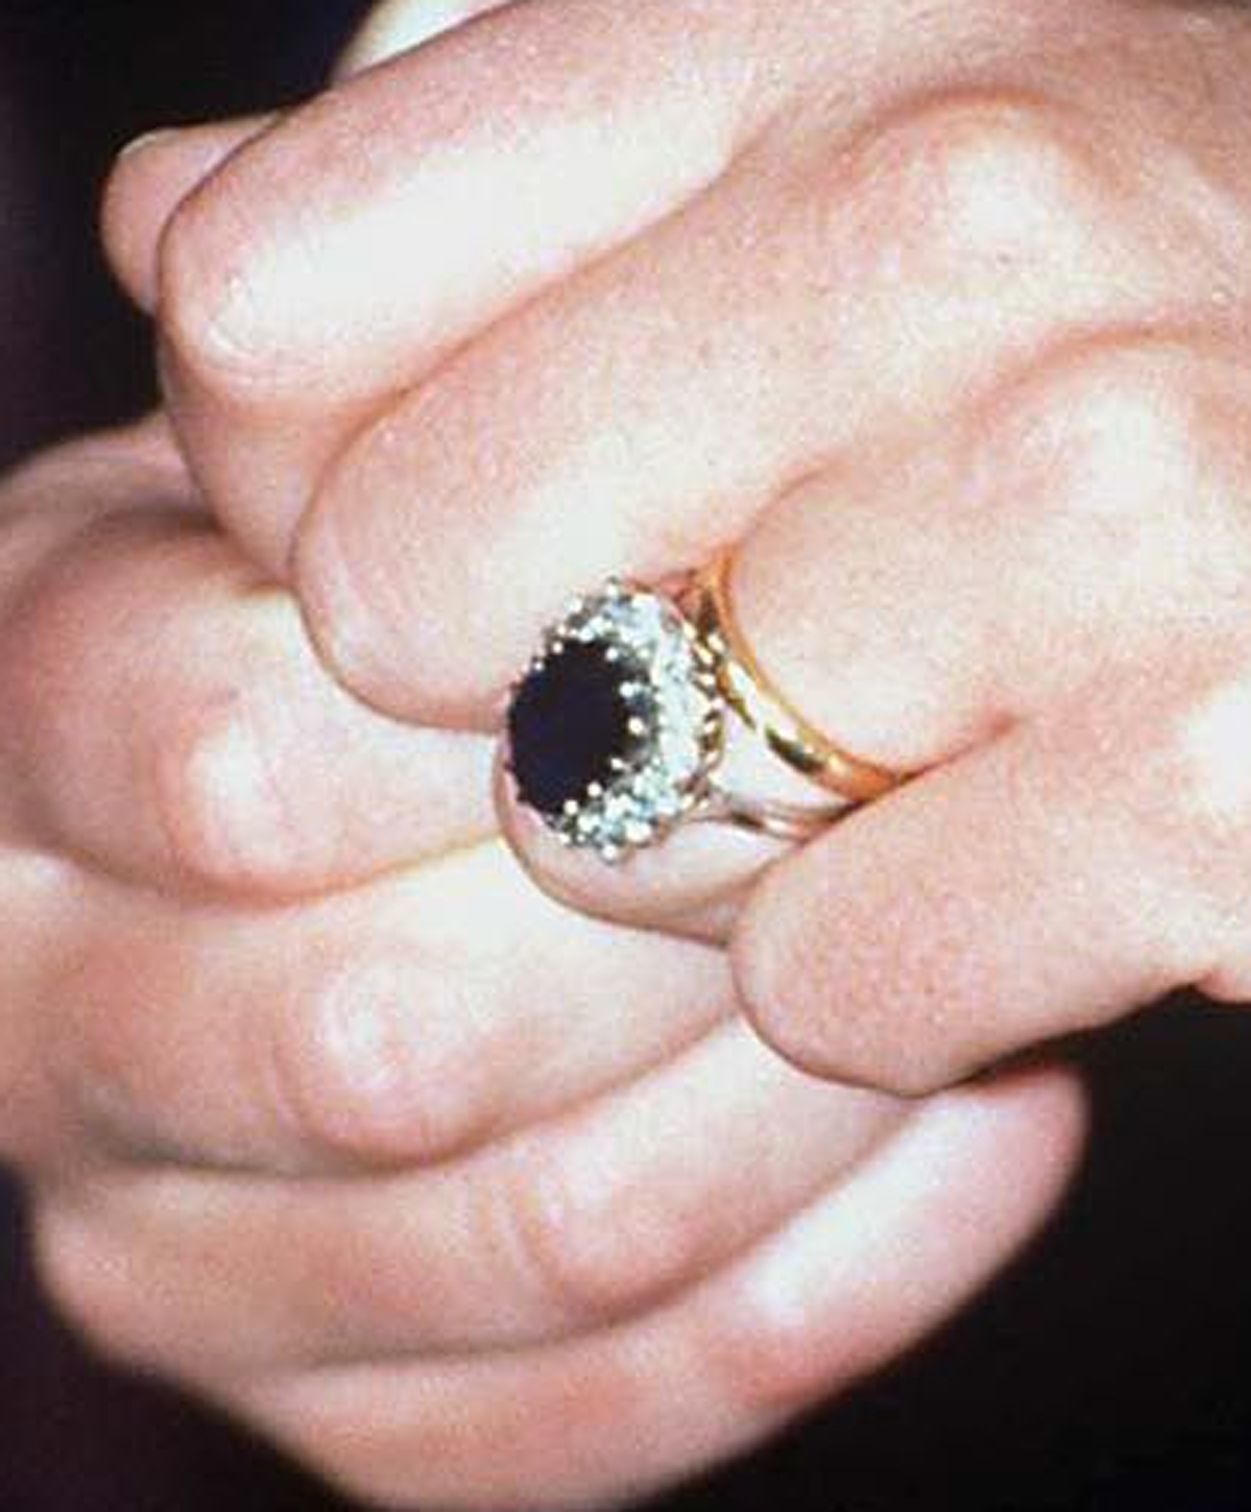 Обручальное кольцо принцессы Дианы